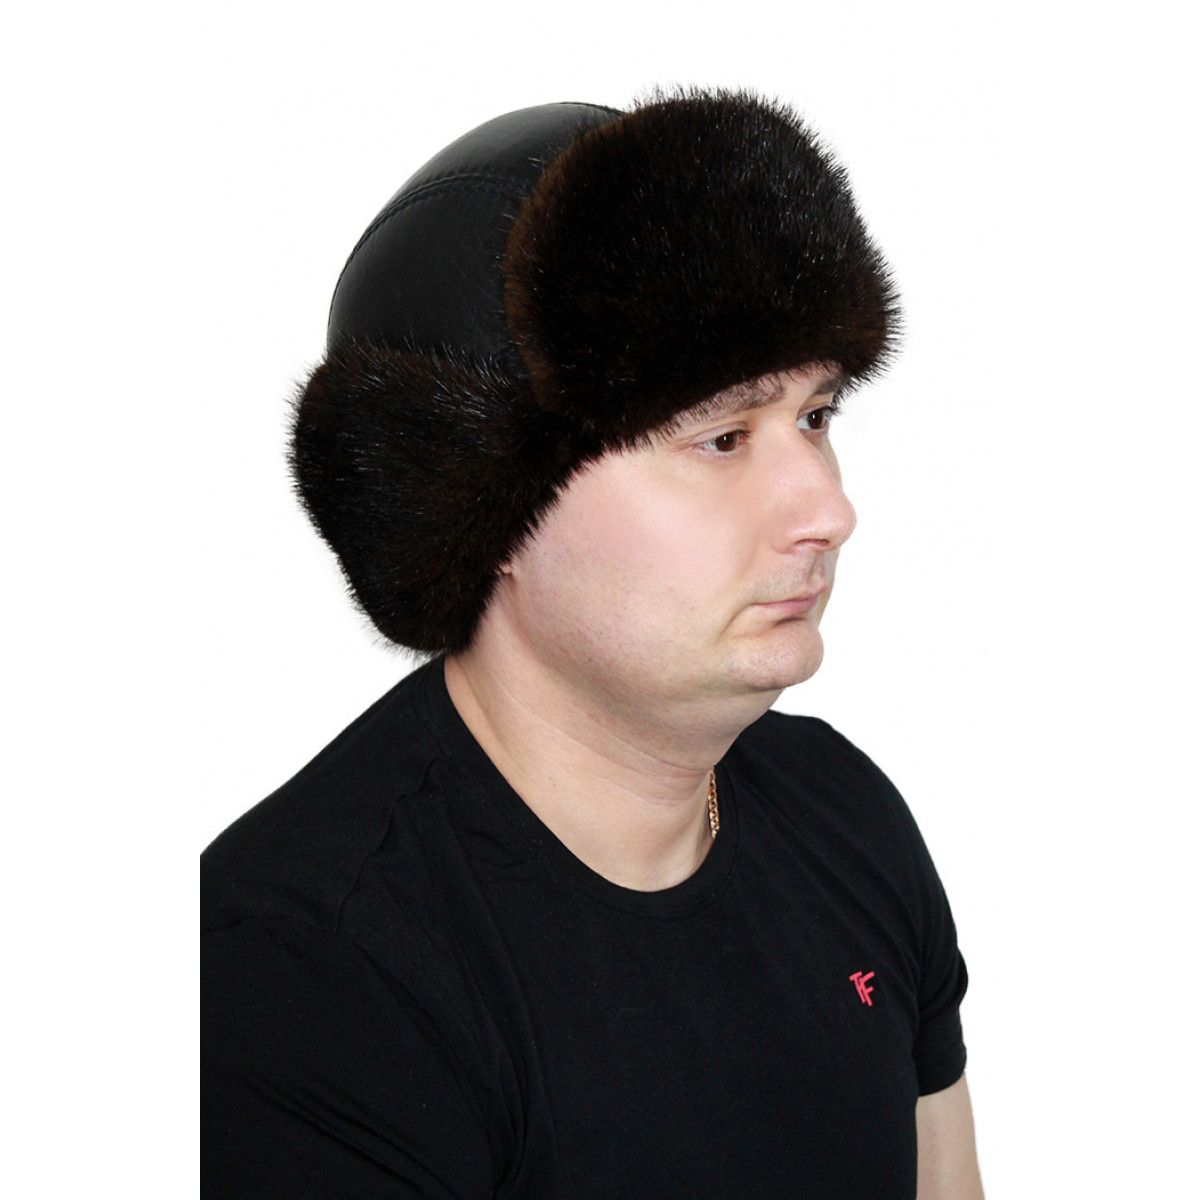 Купить шапку омск